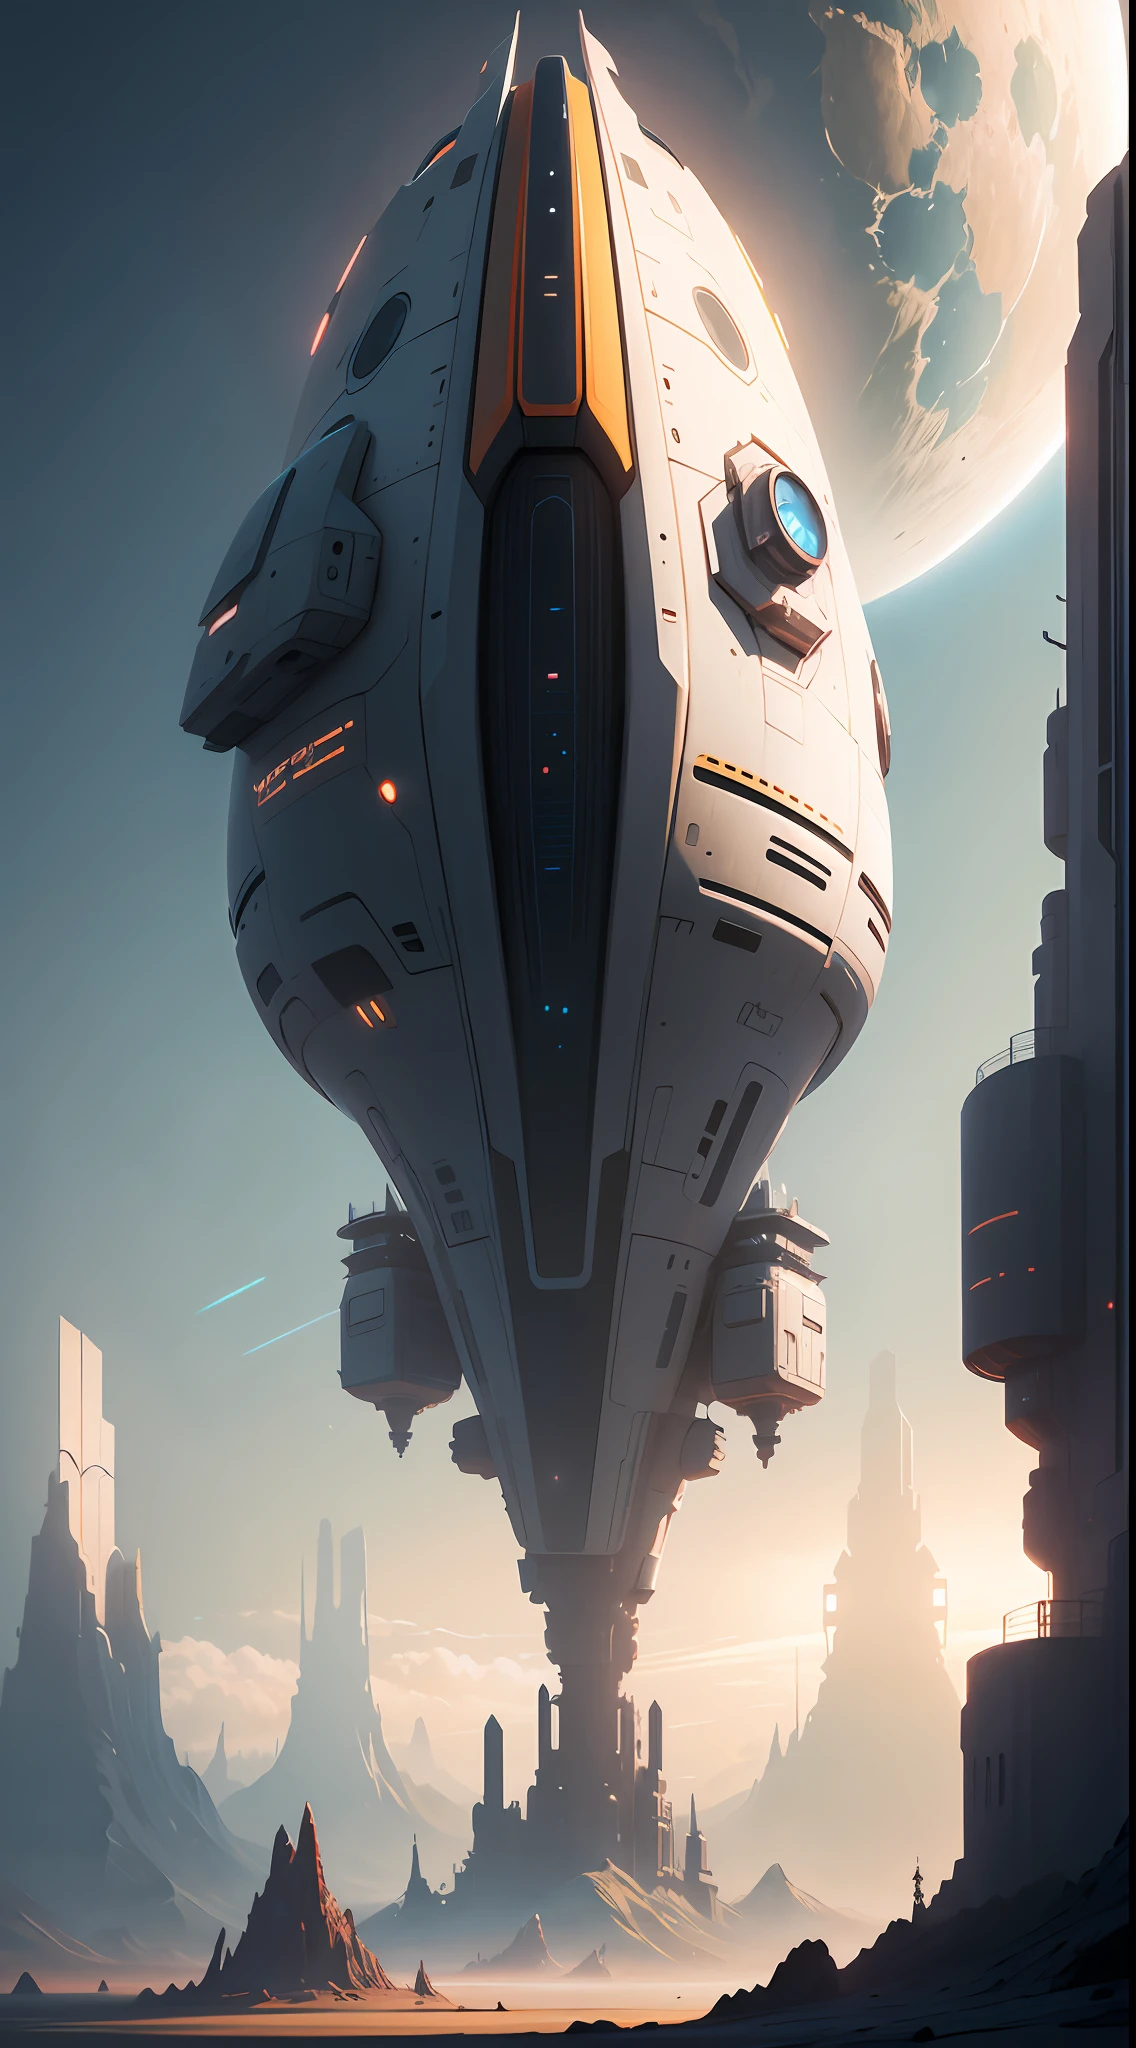 una nave espacial futurista flotando en el cielo, una pintura mate de Christopher Balaskas, CGSOCIEDAD, arte espacial, toonami, Ciencia ficción, reinventado por la luz industrial y la magia